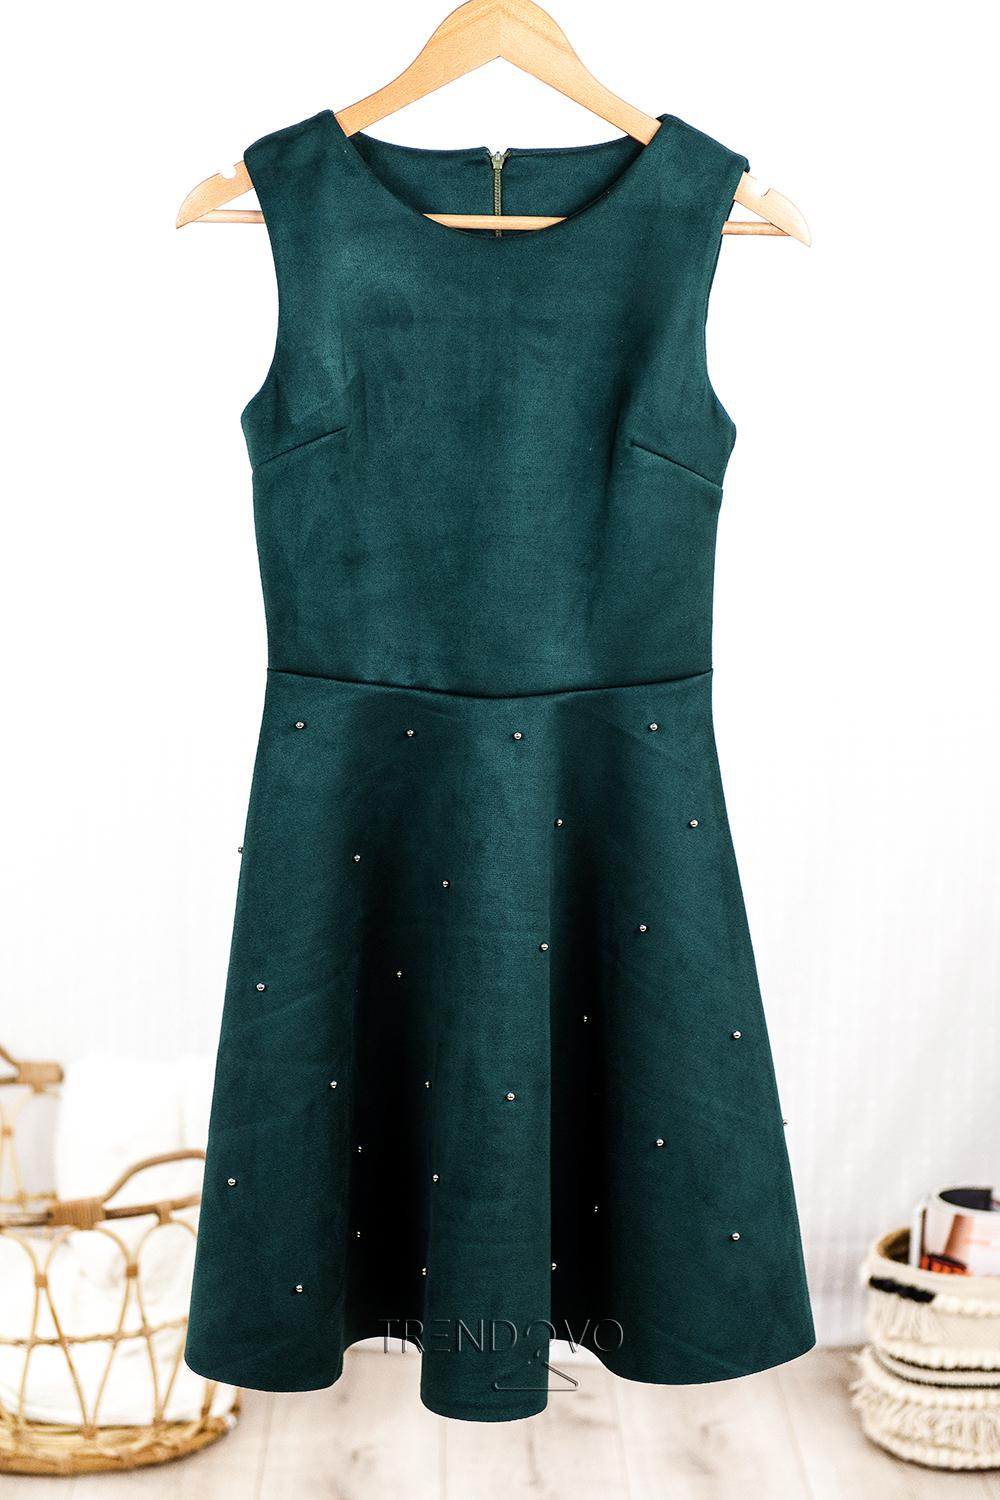 Zelené šaty bez rukávů s perličkami